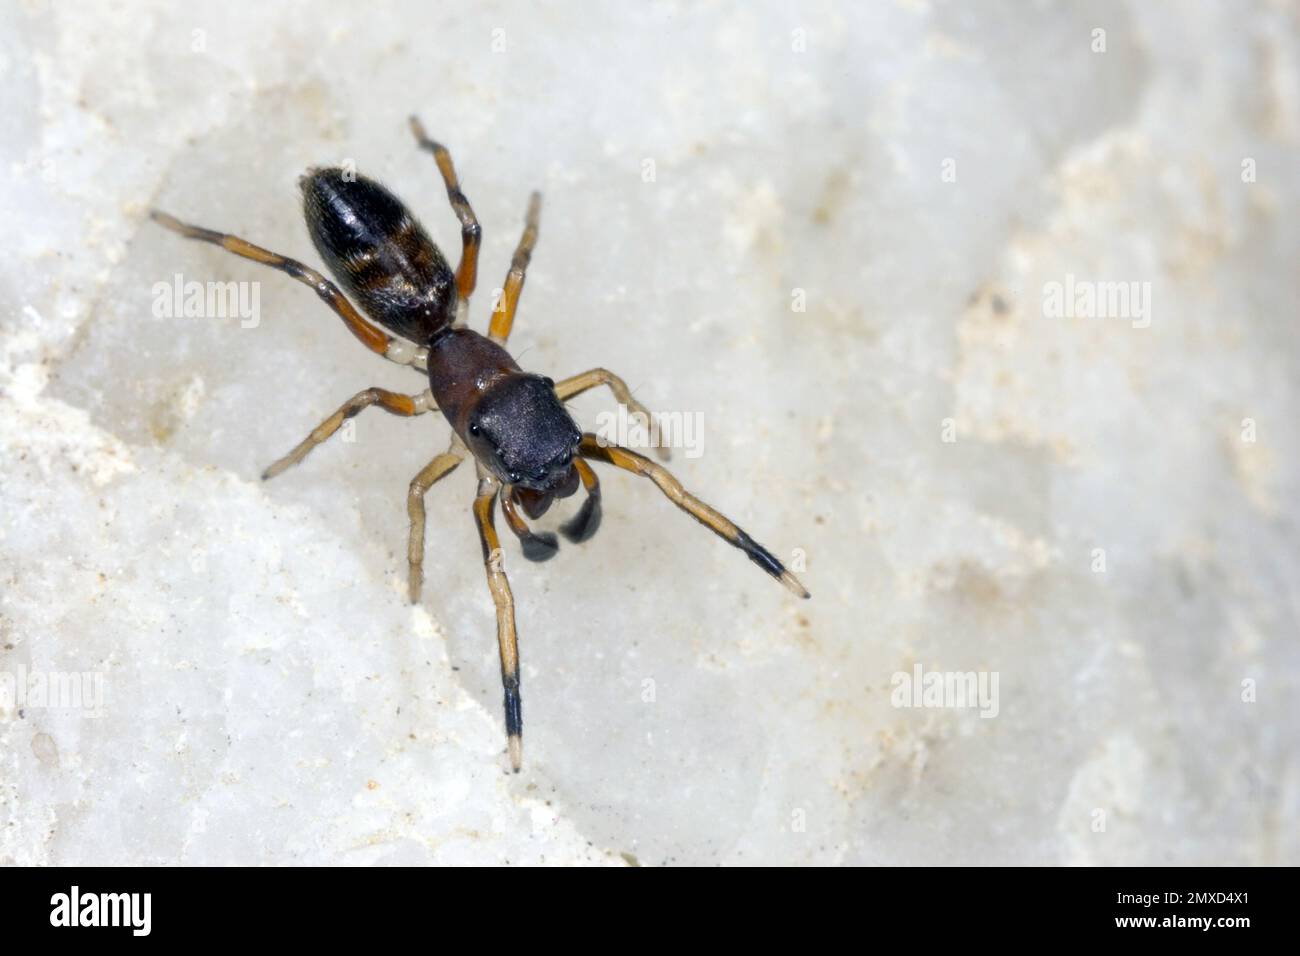 Araignée sauteuse ANT Mimic, araignée Ant (Myrmarachne formicaria), femelle, vue dorsale, Allemagne Banque D'Images